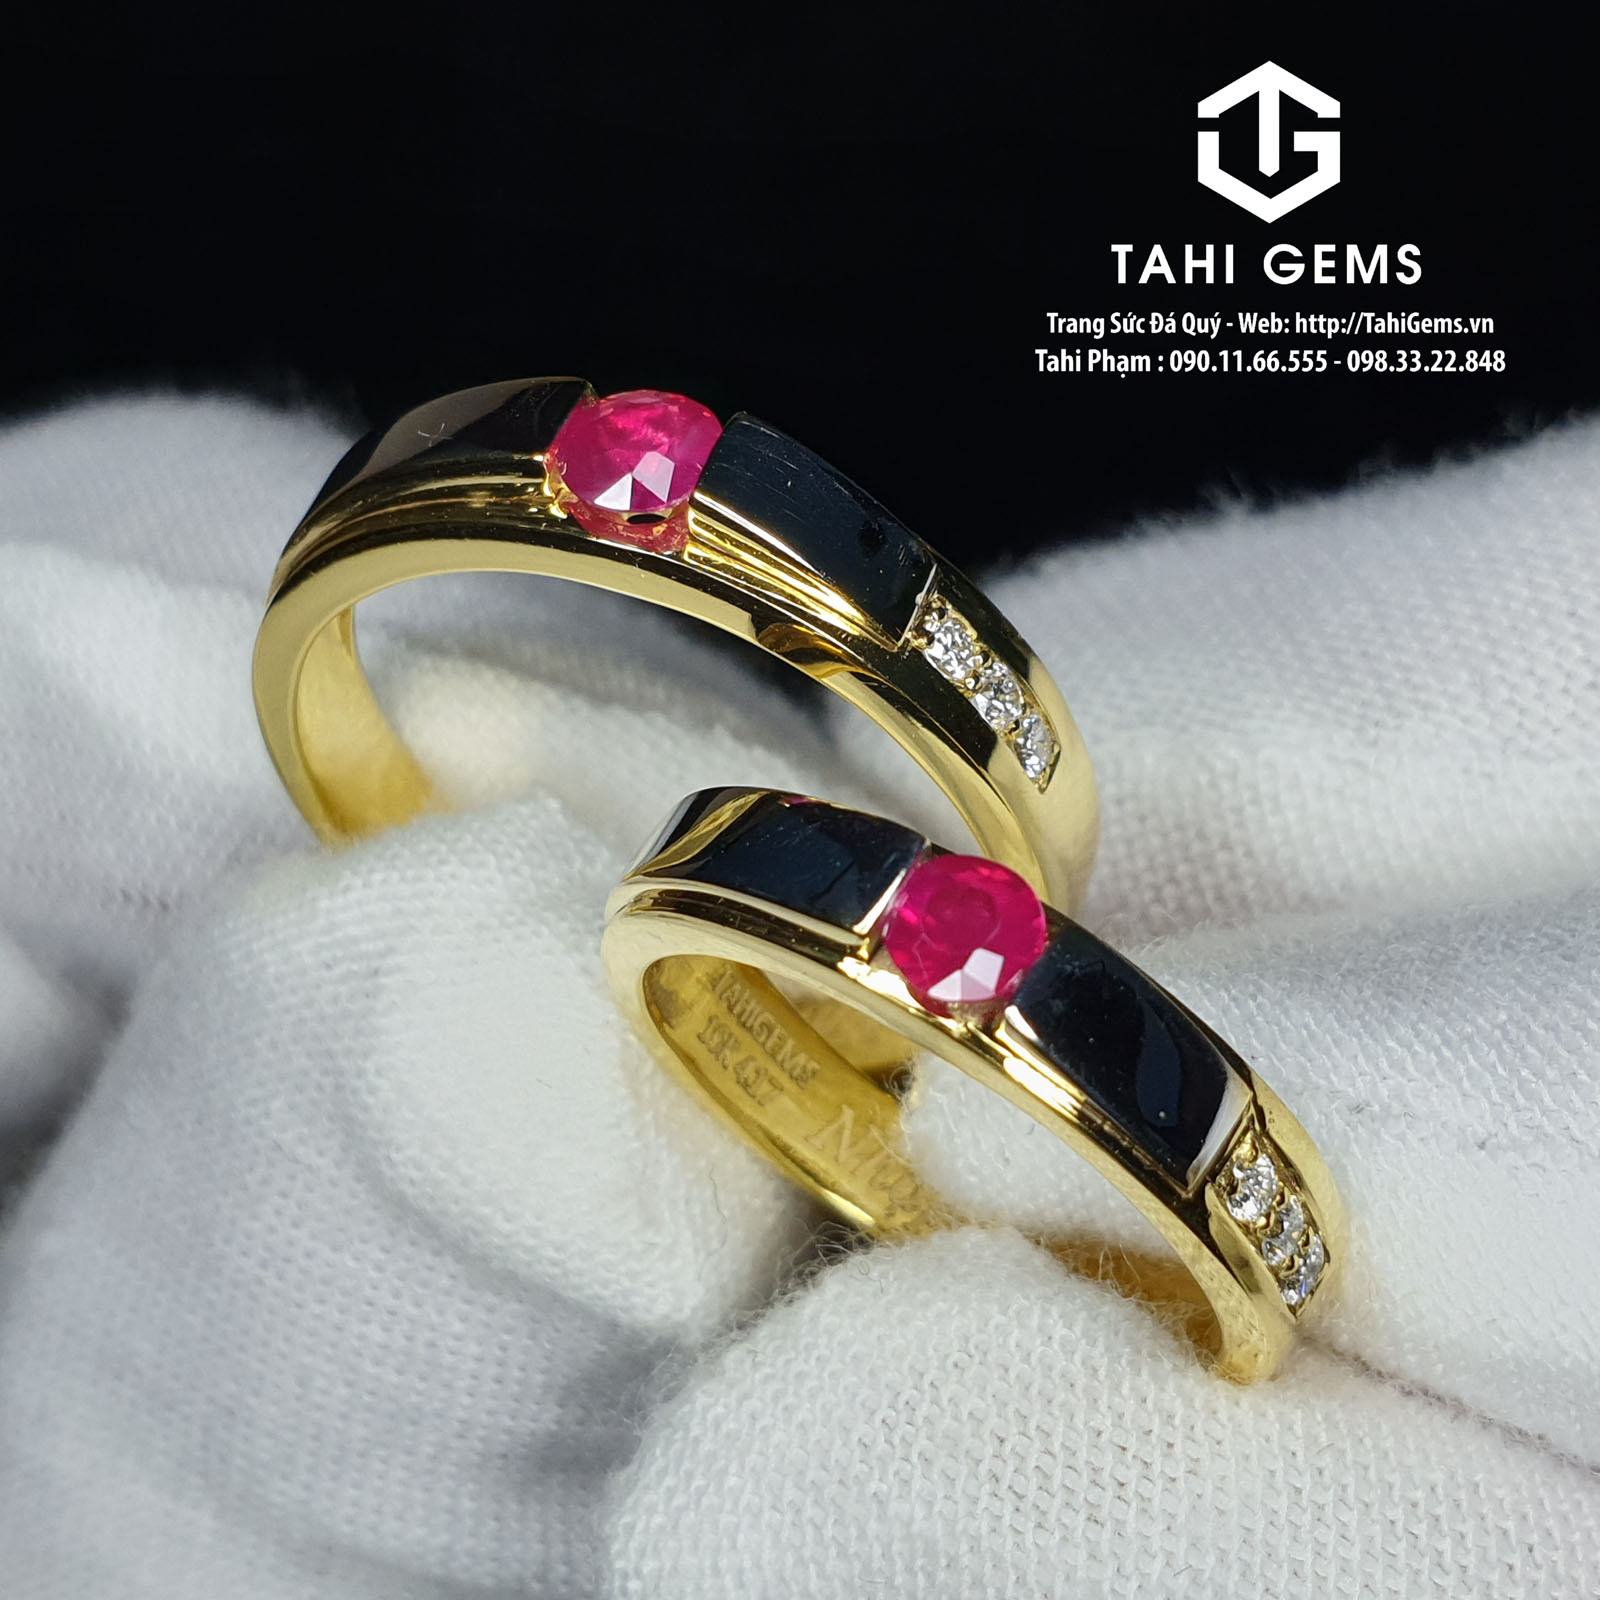 Tahi 3990 – đôi nhẫn cưới đá quý Ruby kết hợp Kim Cương mẫu cổ điển